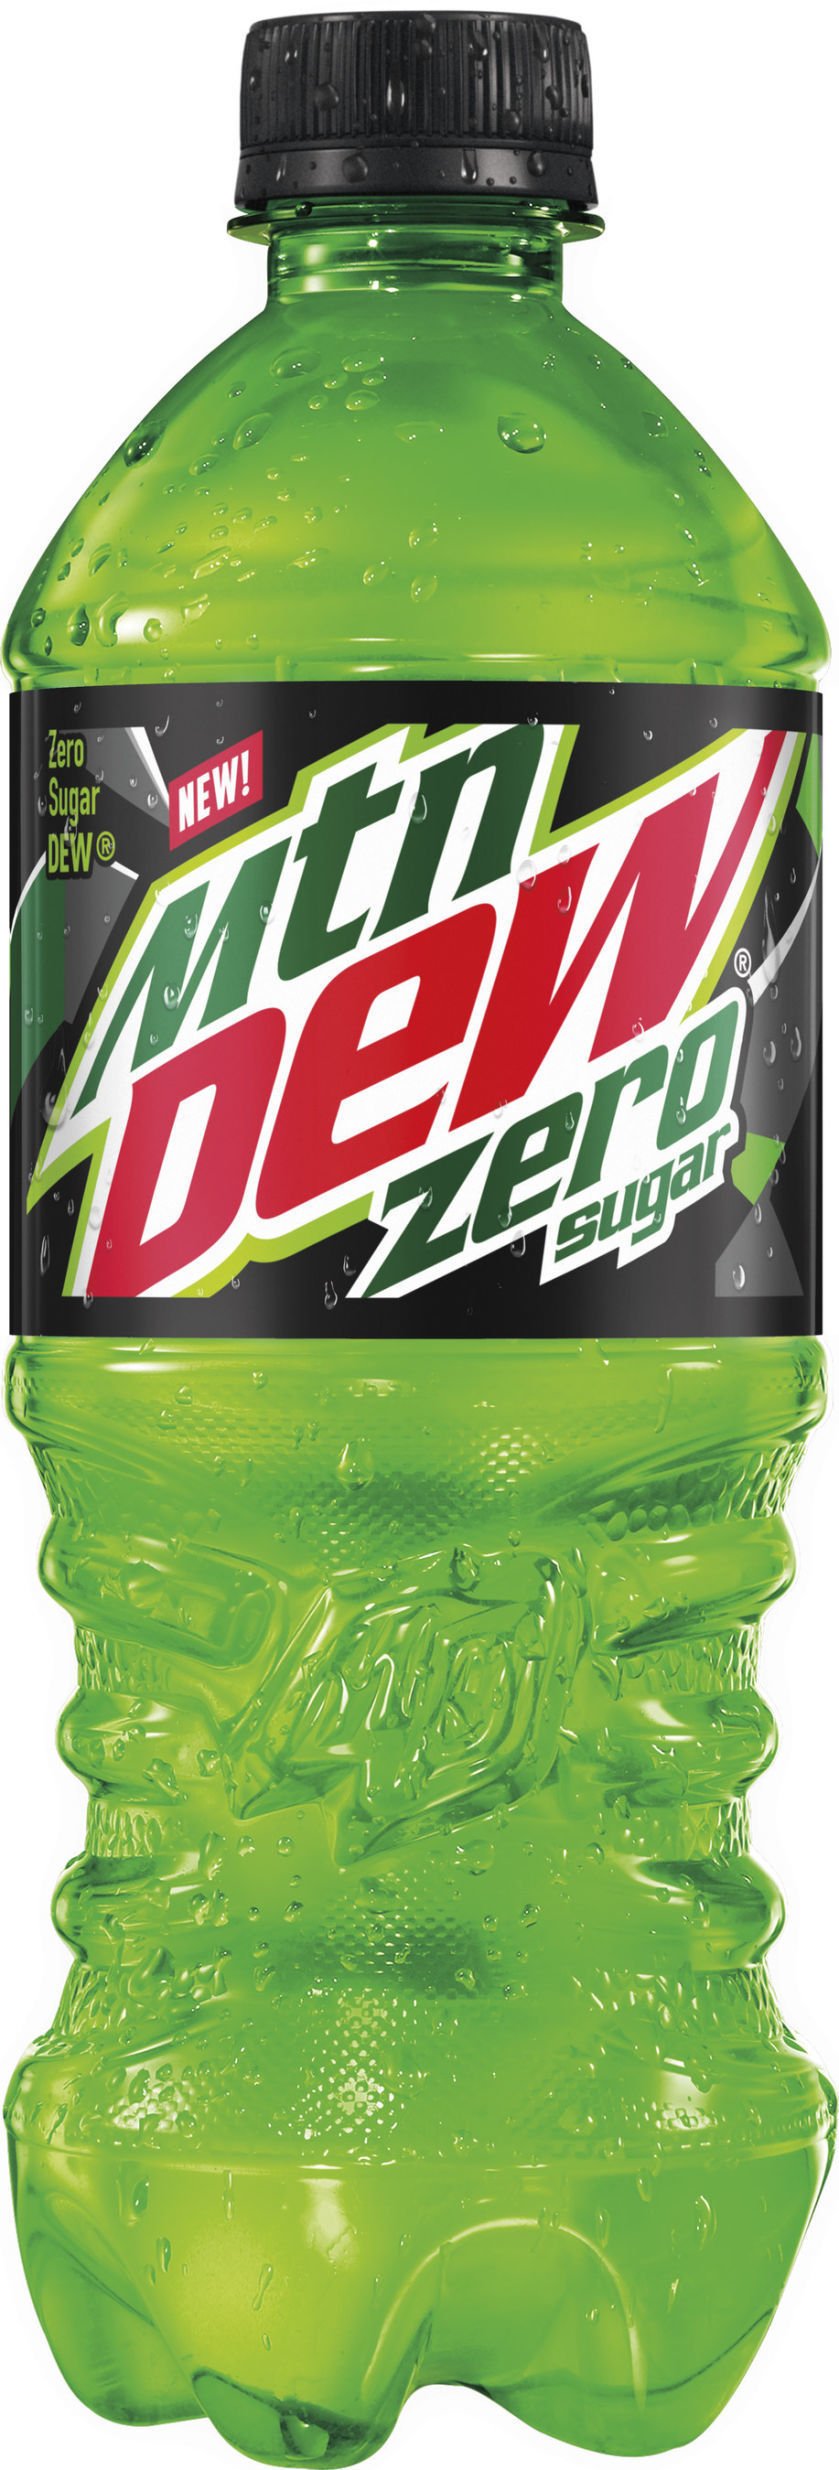 mountain dew zero keto